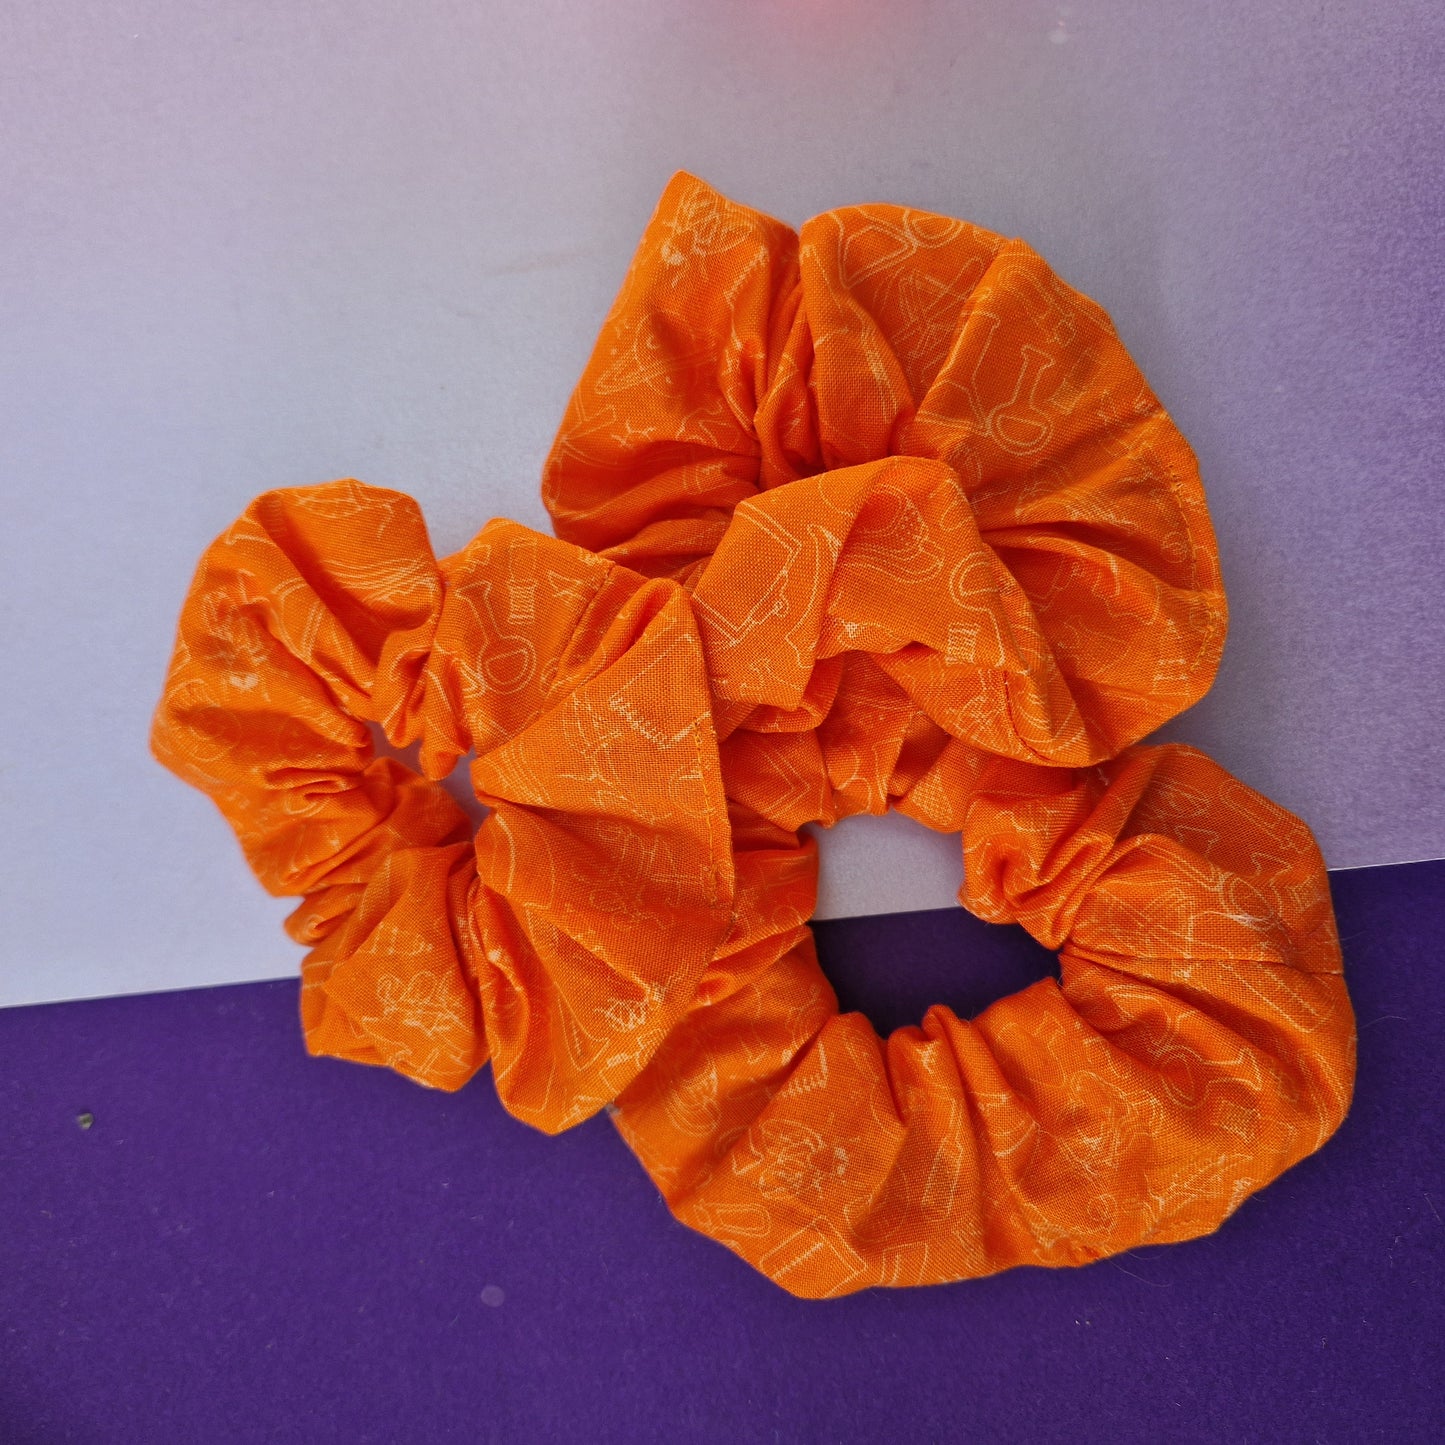 Orange science cotton hair scrunchie